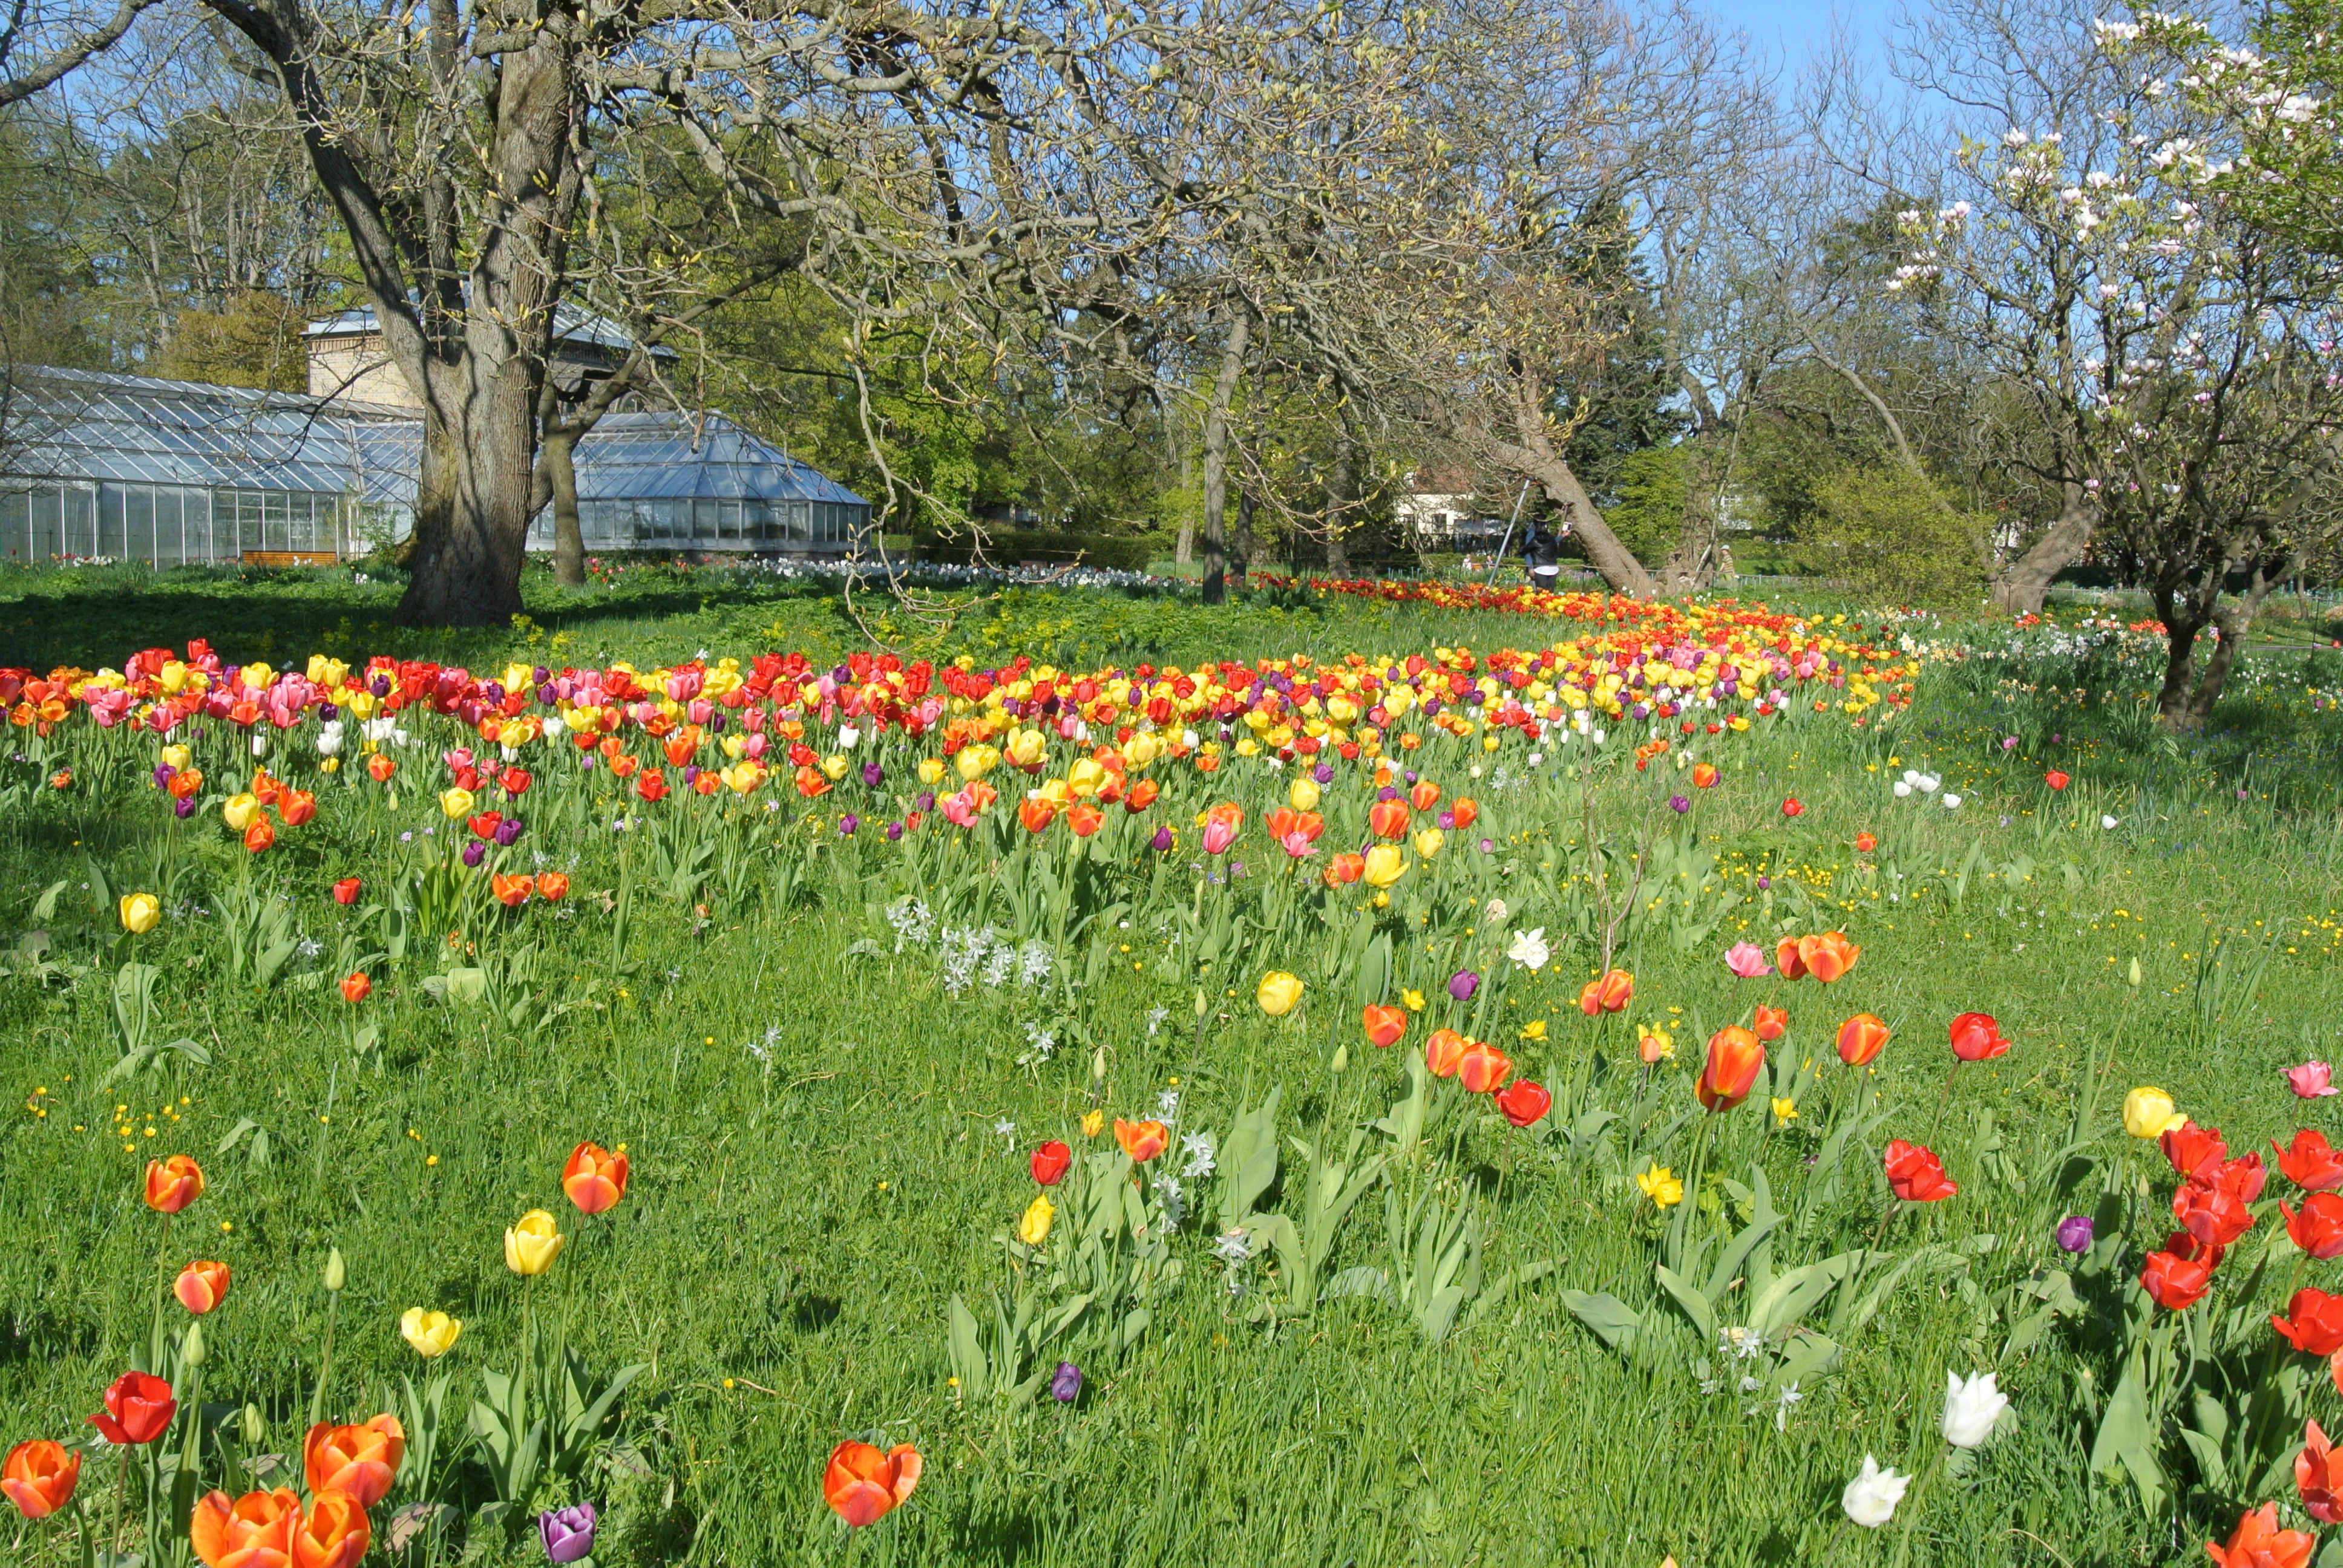 Tulips at Lund's Botanical Garden